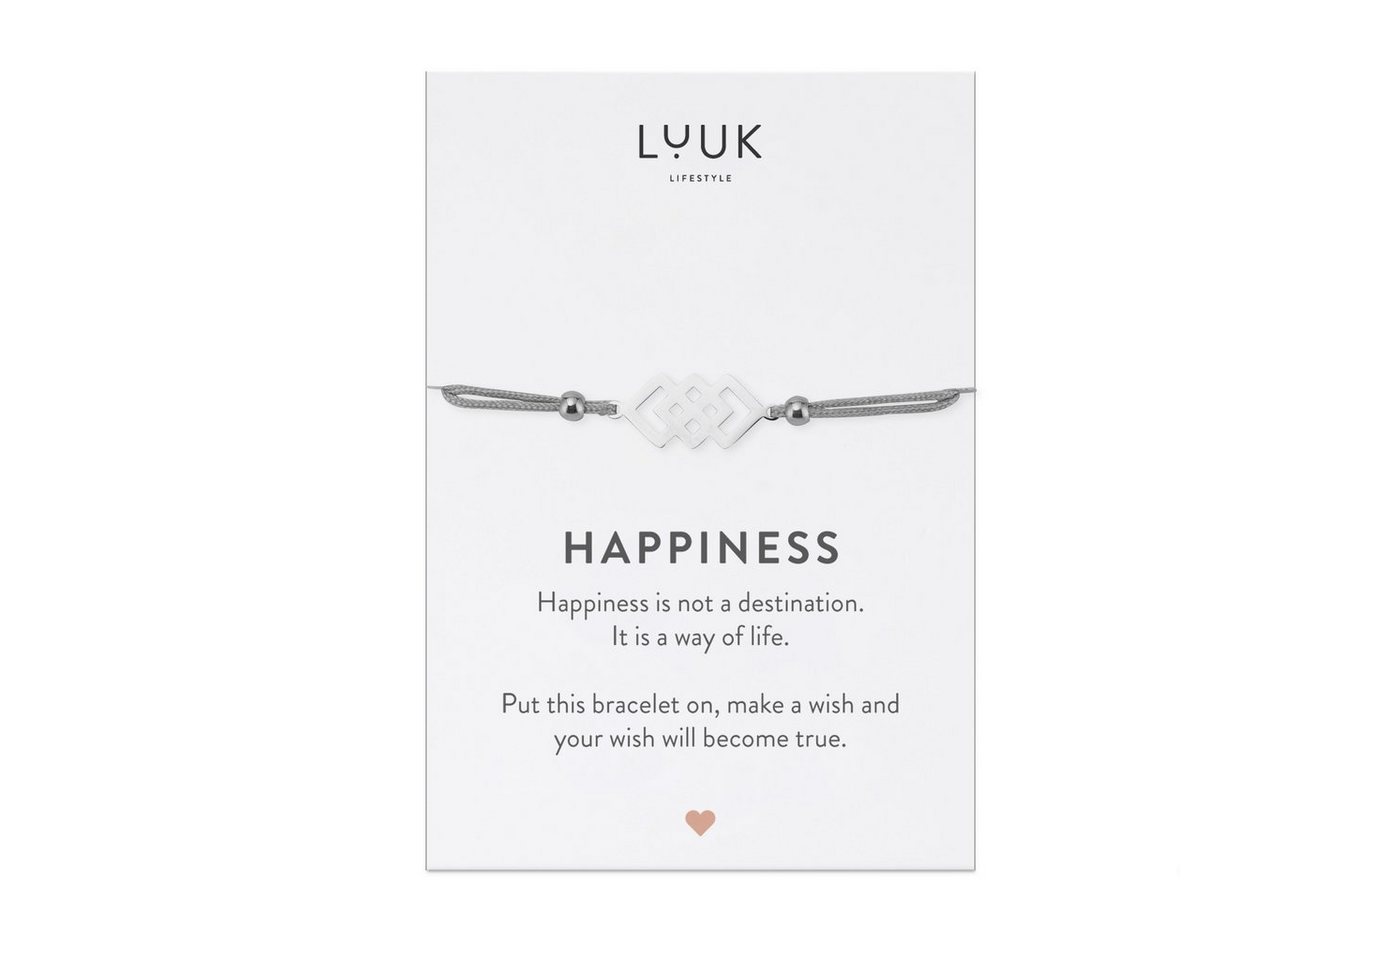 LUUK LIFESTYLE Freundschaftsarmband verschlungene Quadrate, handmade, mit Happiness Spruchkarte von LUUK LIFESTYLE